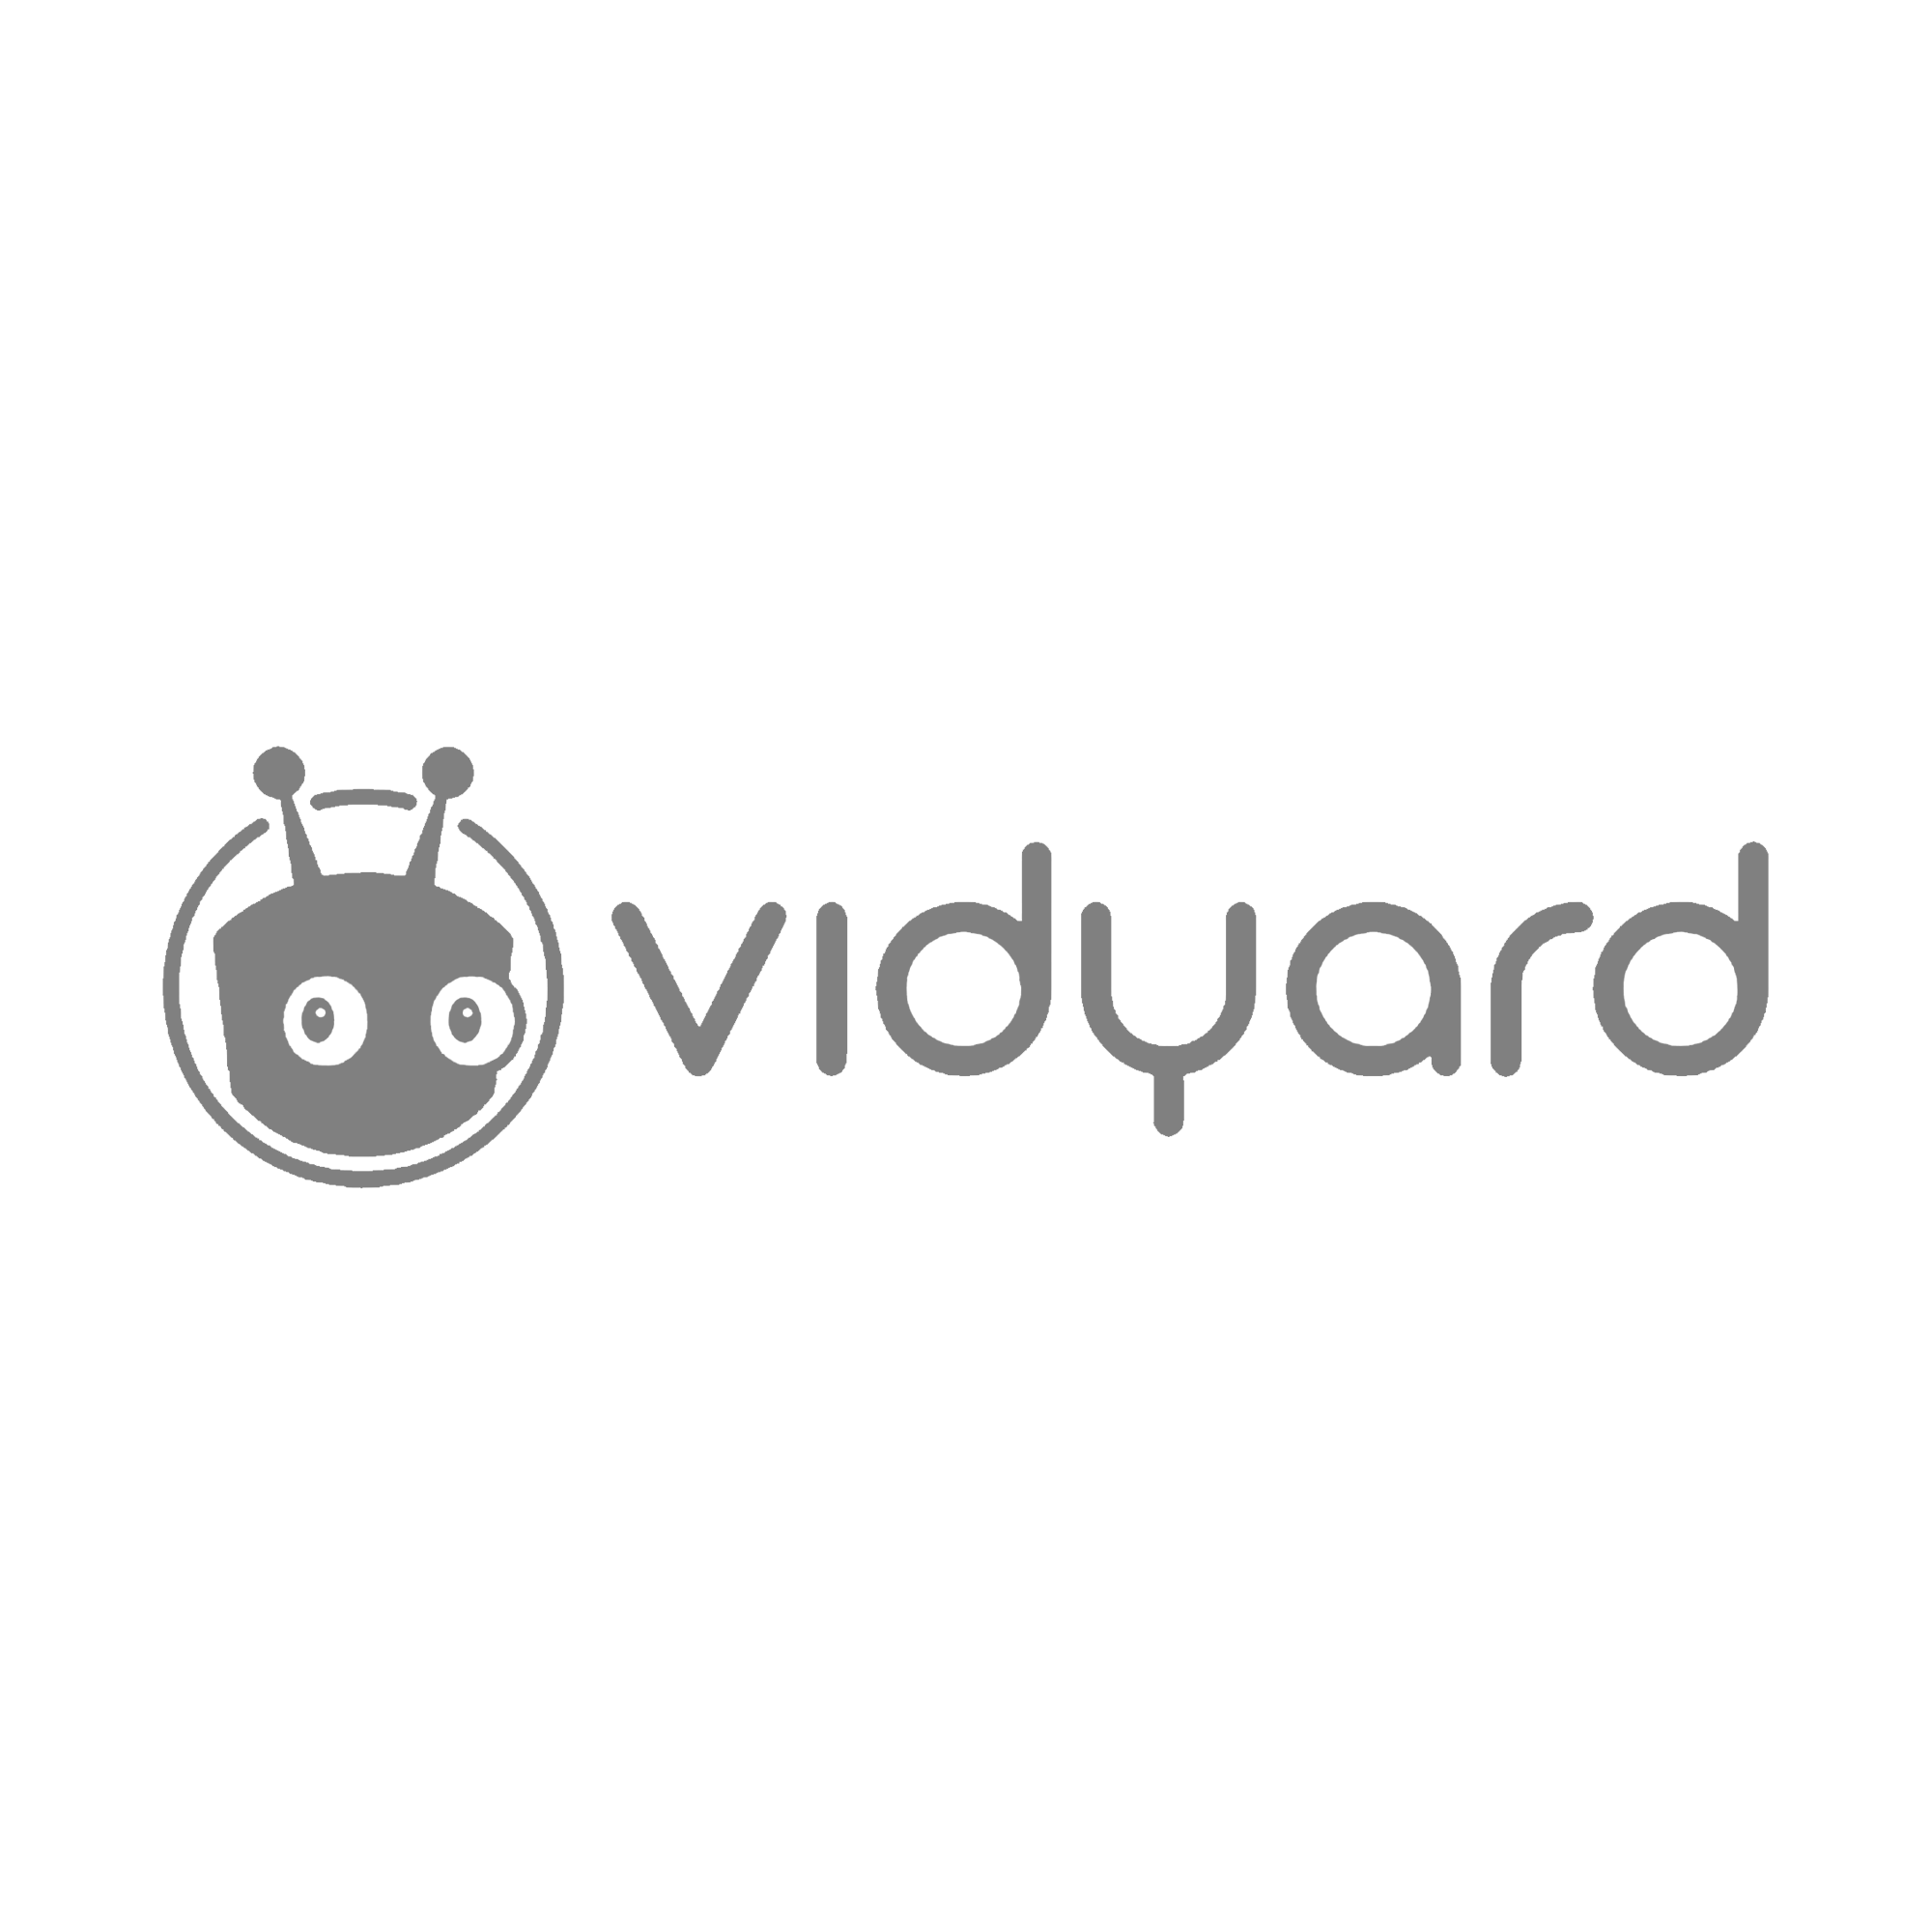 Vidyard_logo